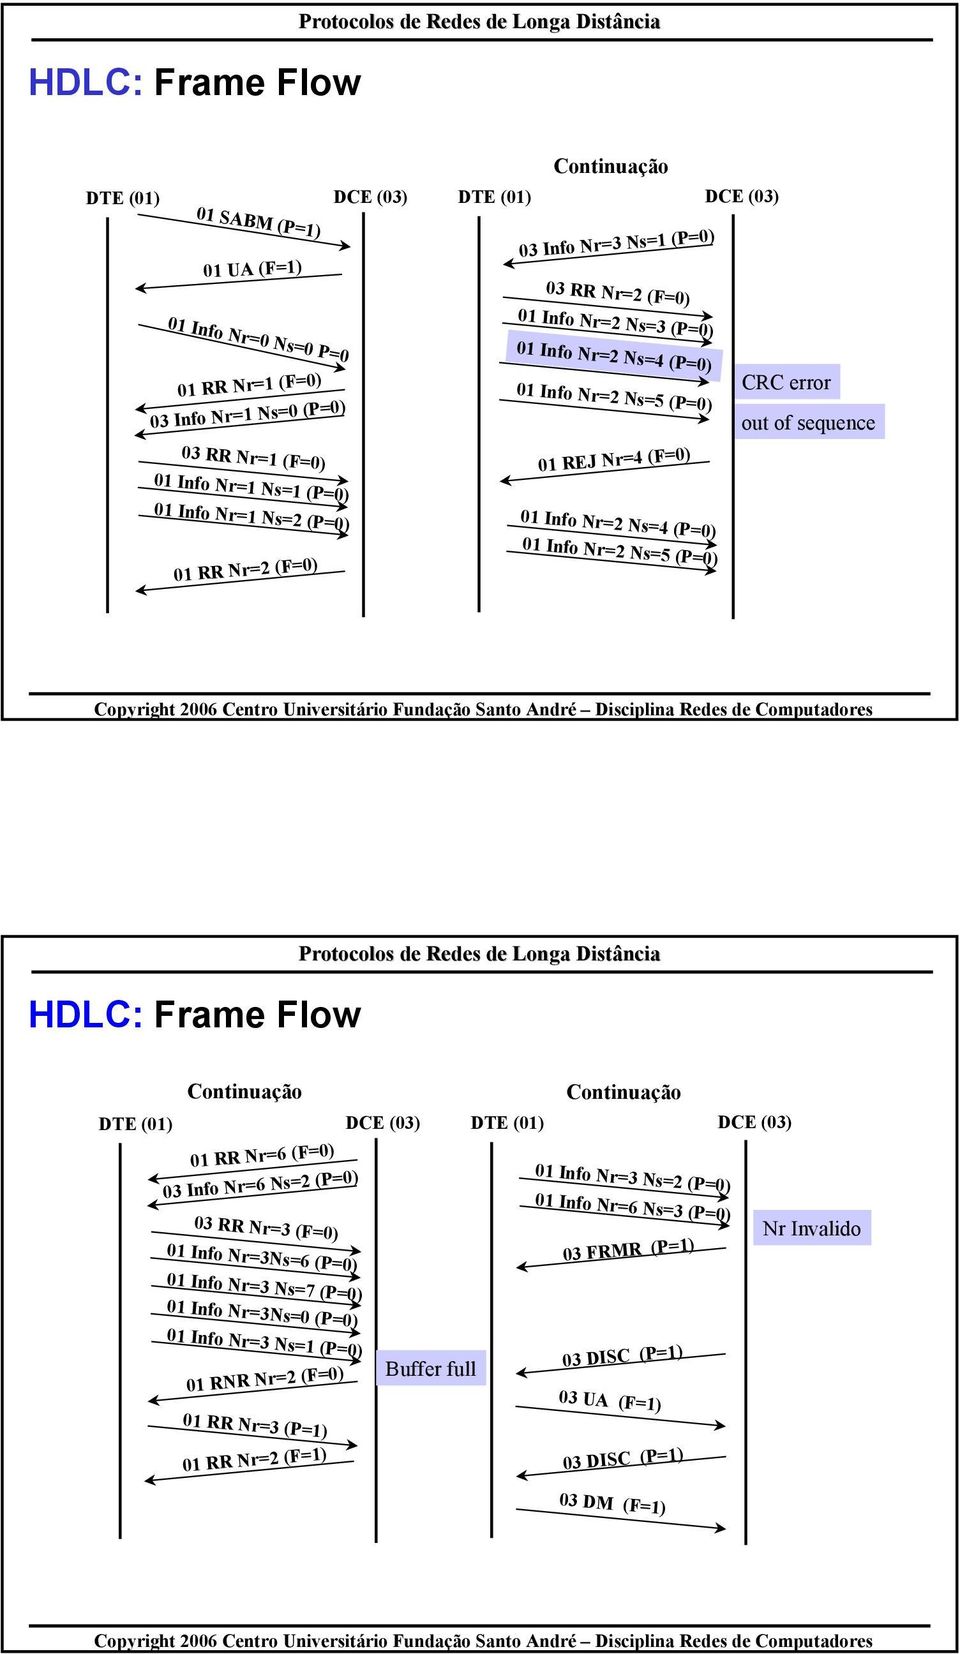 Info Nr=2 Ns=4 (P=0) 01 Info Nr=2 Ns=5 (P=0) HDLC: Frame Flow Continuação Continuação DTE (01) DCE (03) DTE (01) DCE (03) 01 RR Nr=6 (F=0) 03 Info Nr=6 Ns=2 (P=0) 03 RR Nr=3 (F=0) 01 Info Nr=3Ns=6